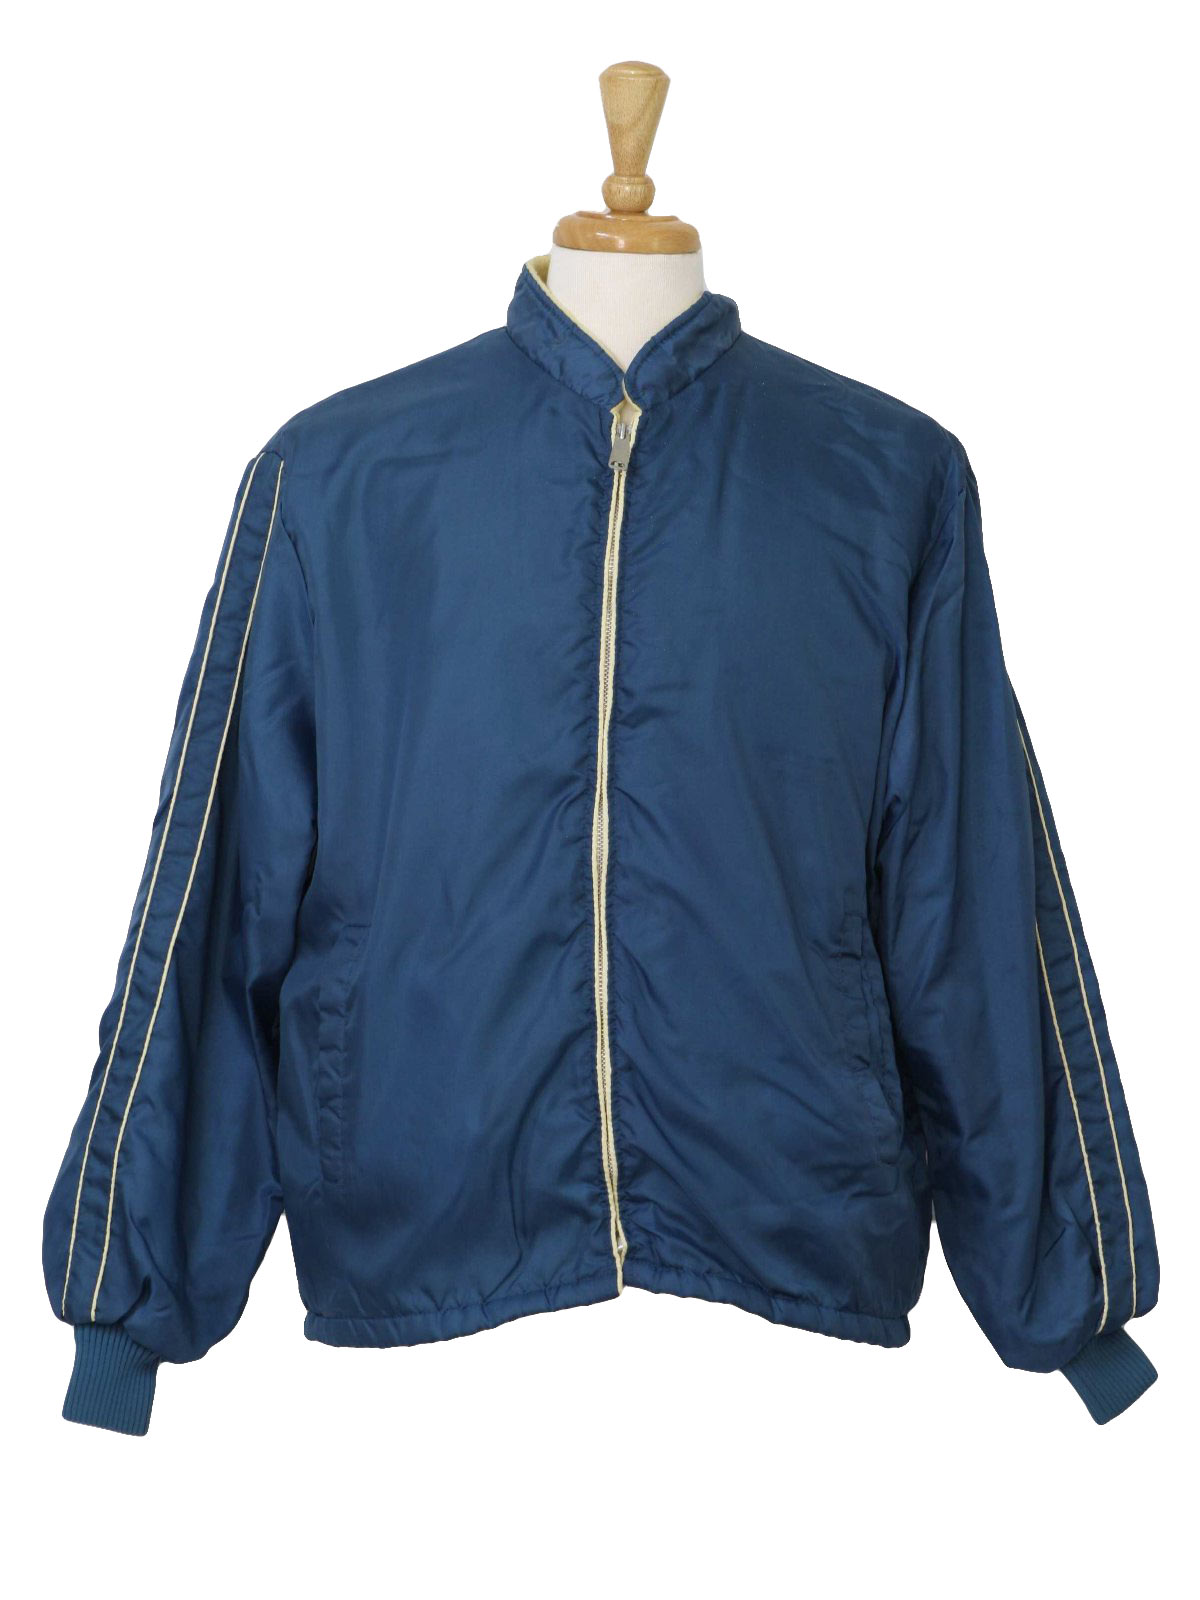 1980's Retro Jacket: 80s -Master-Jac- Mens marine blue and cream nylon ...